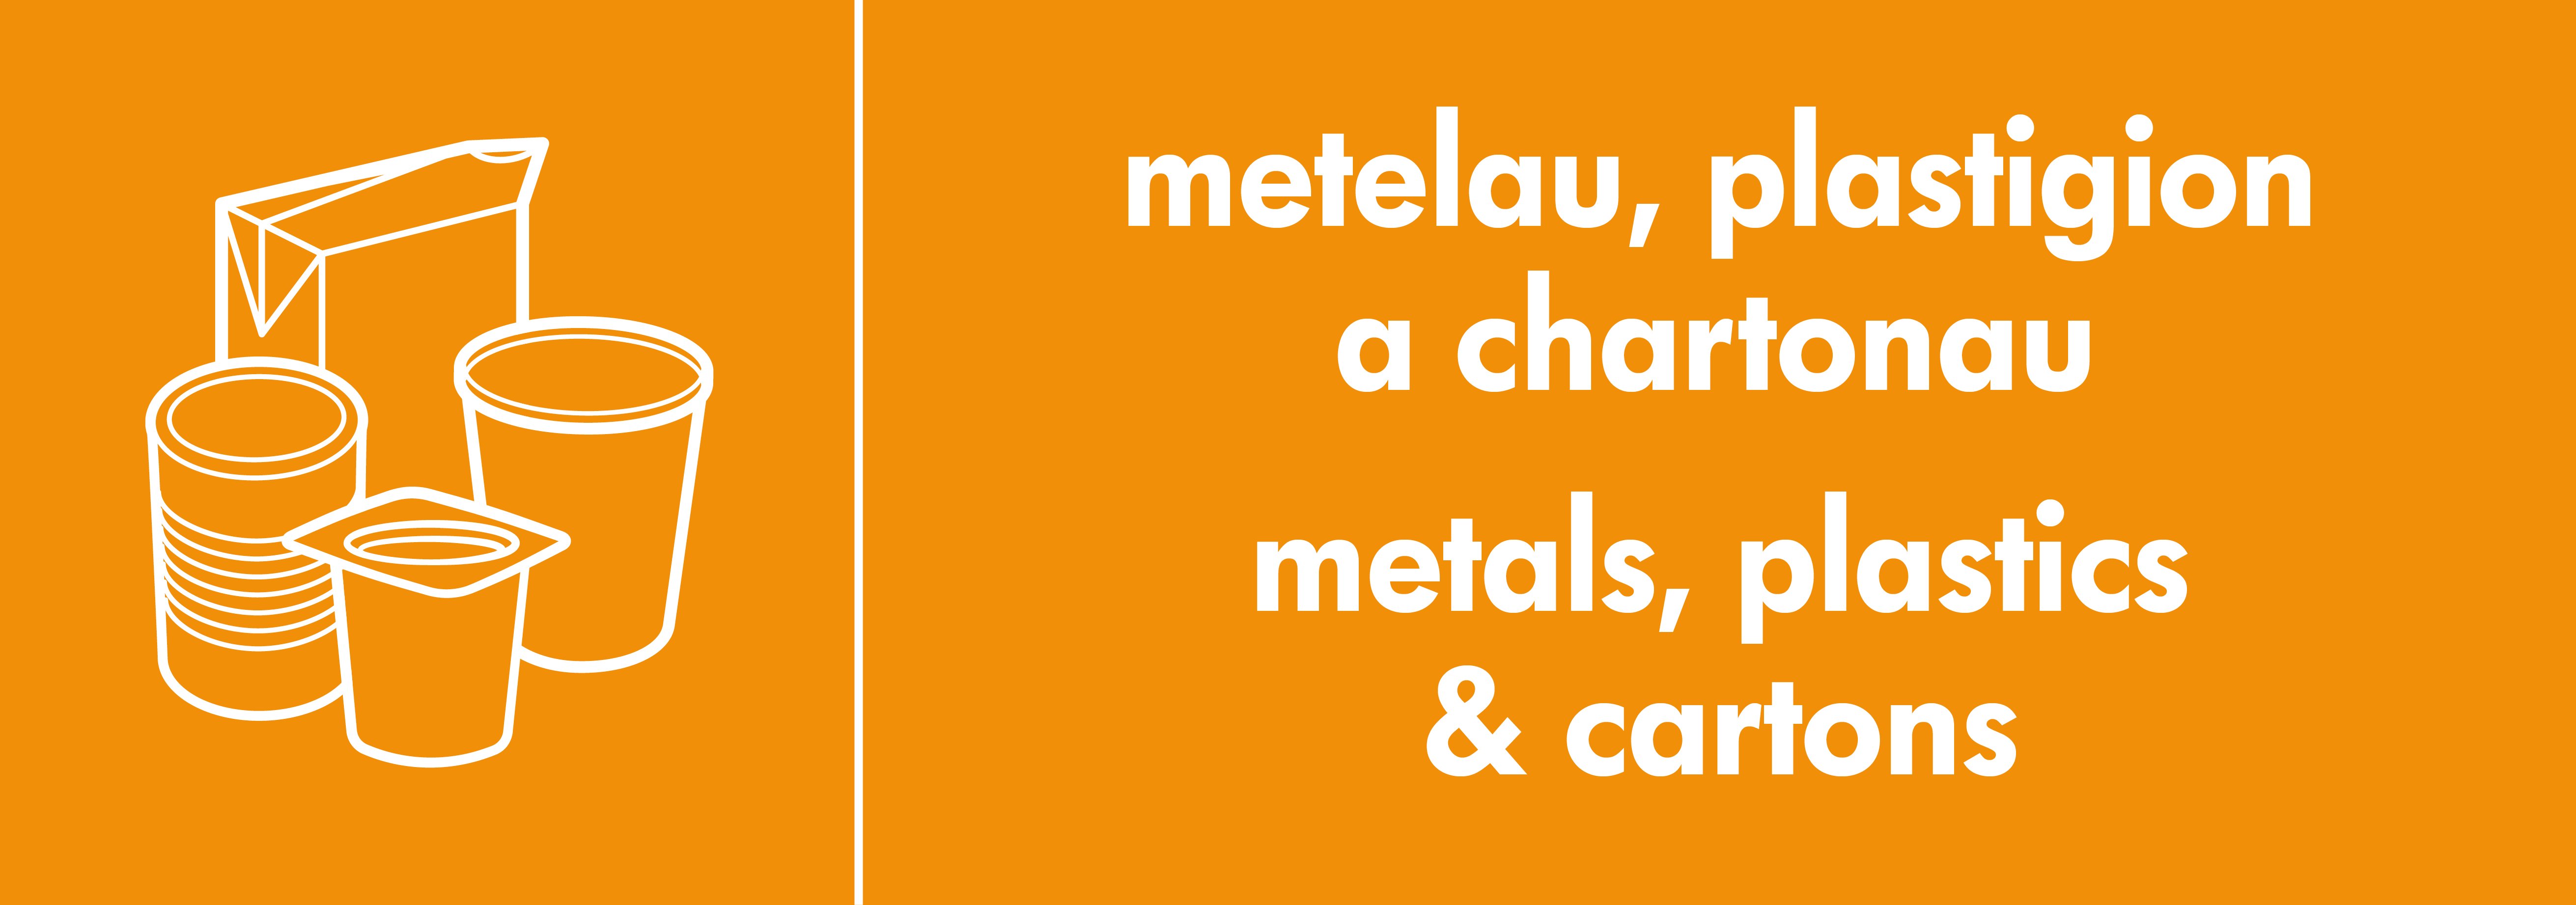 Metals, plastics & cartons